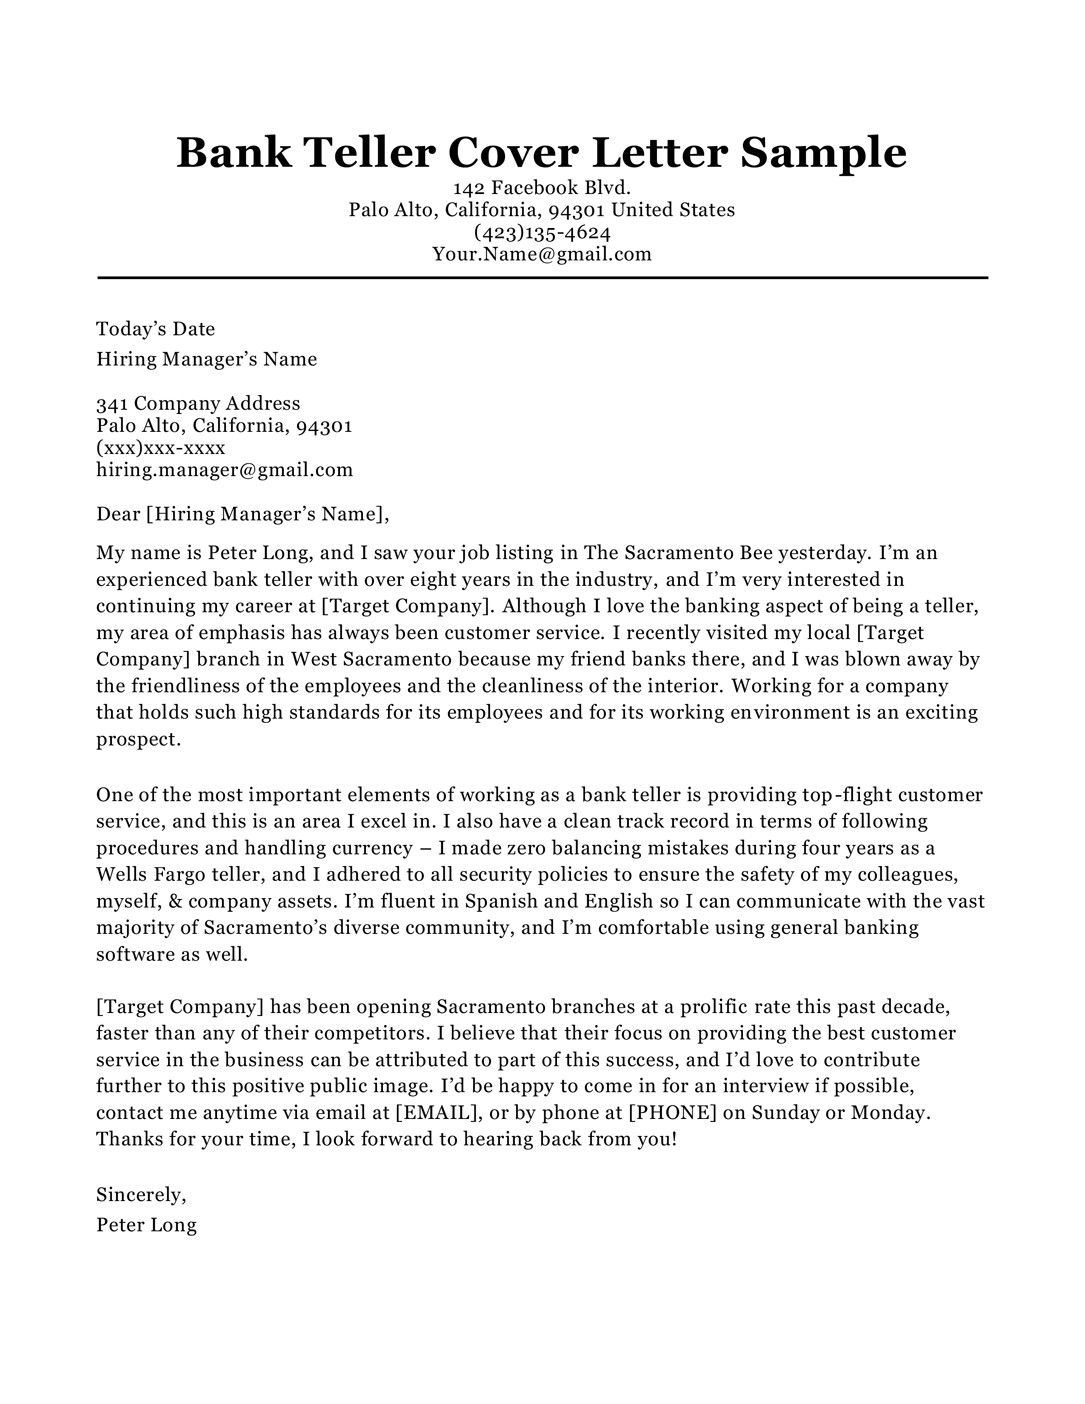 Bank Teller Resume Cover Letter Samples Bank Teller Cover Letter Sample & Tips